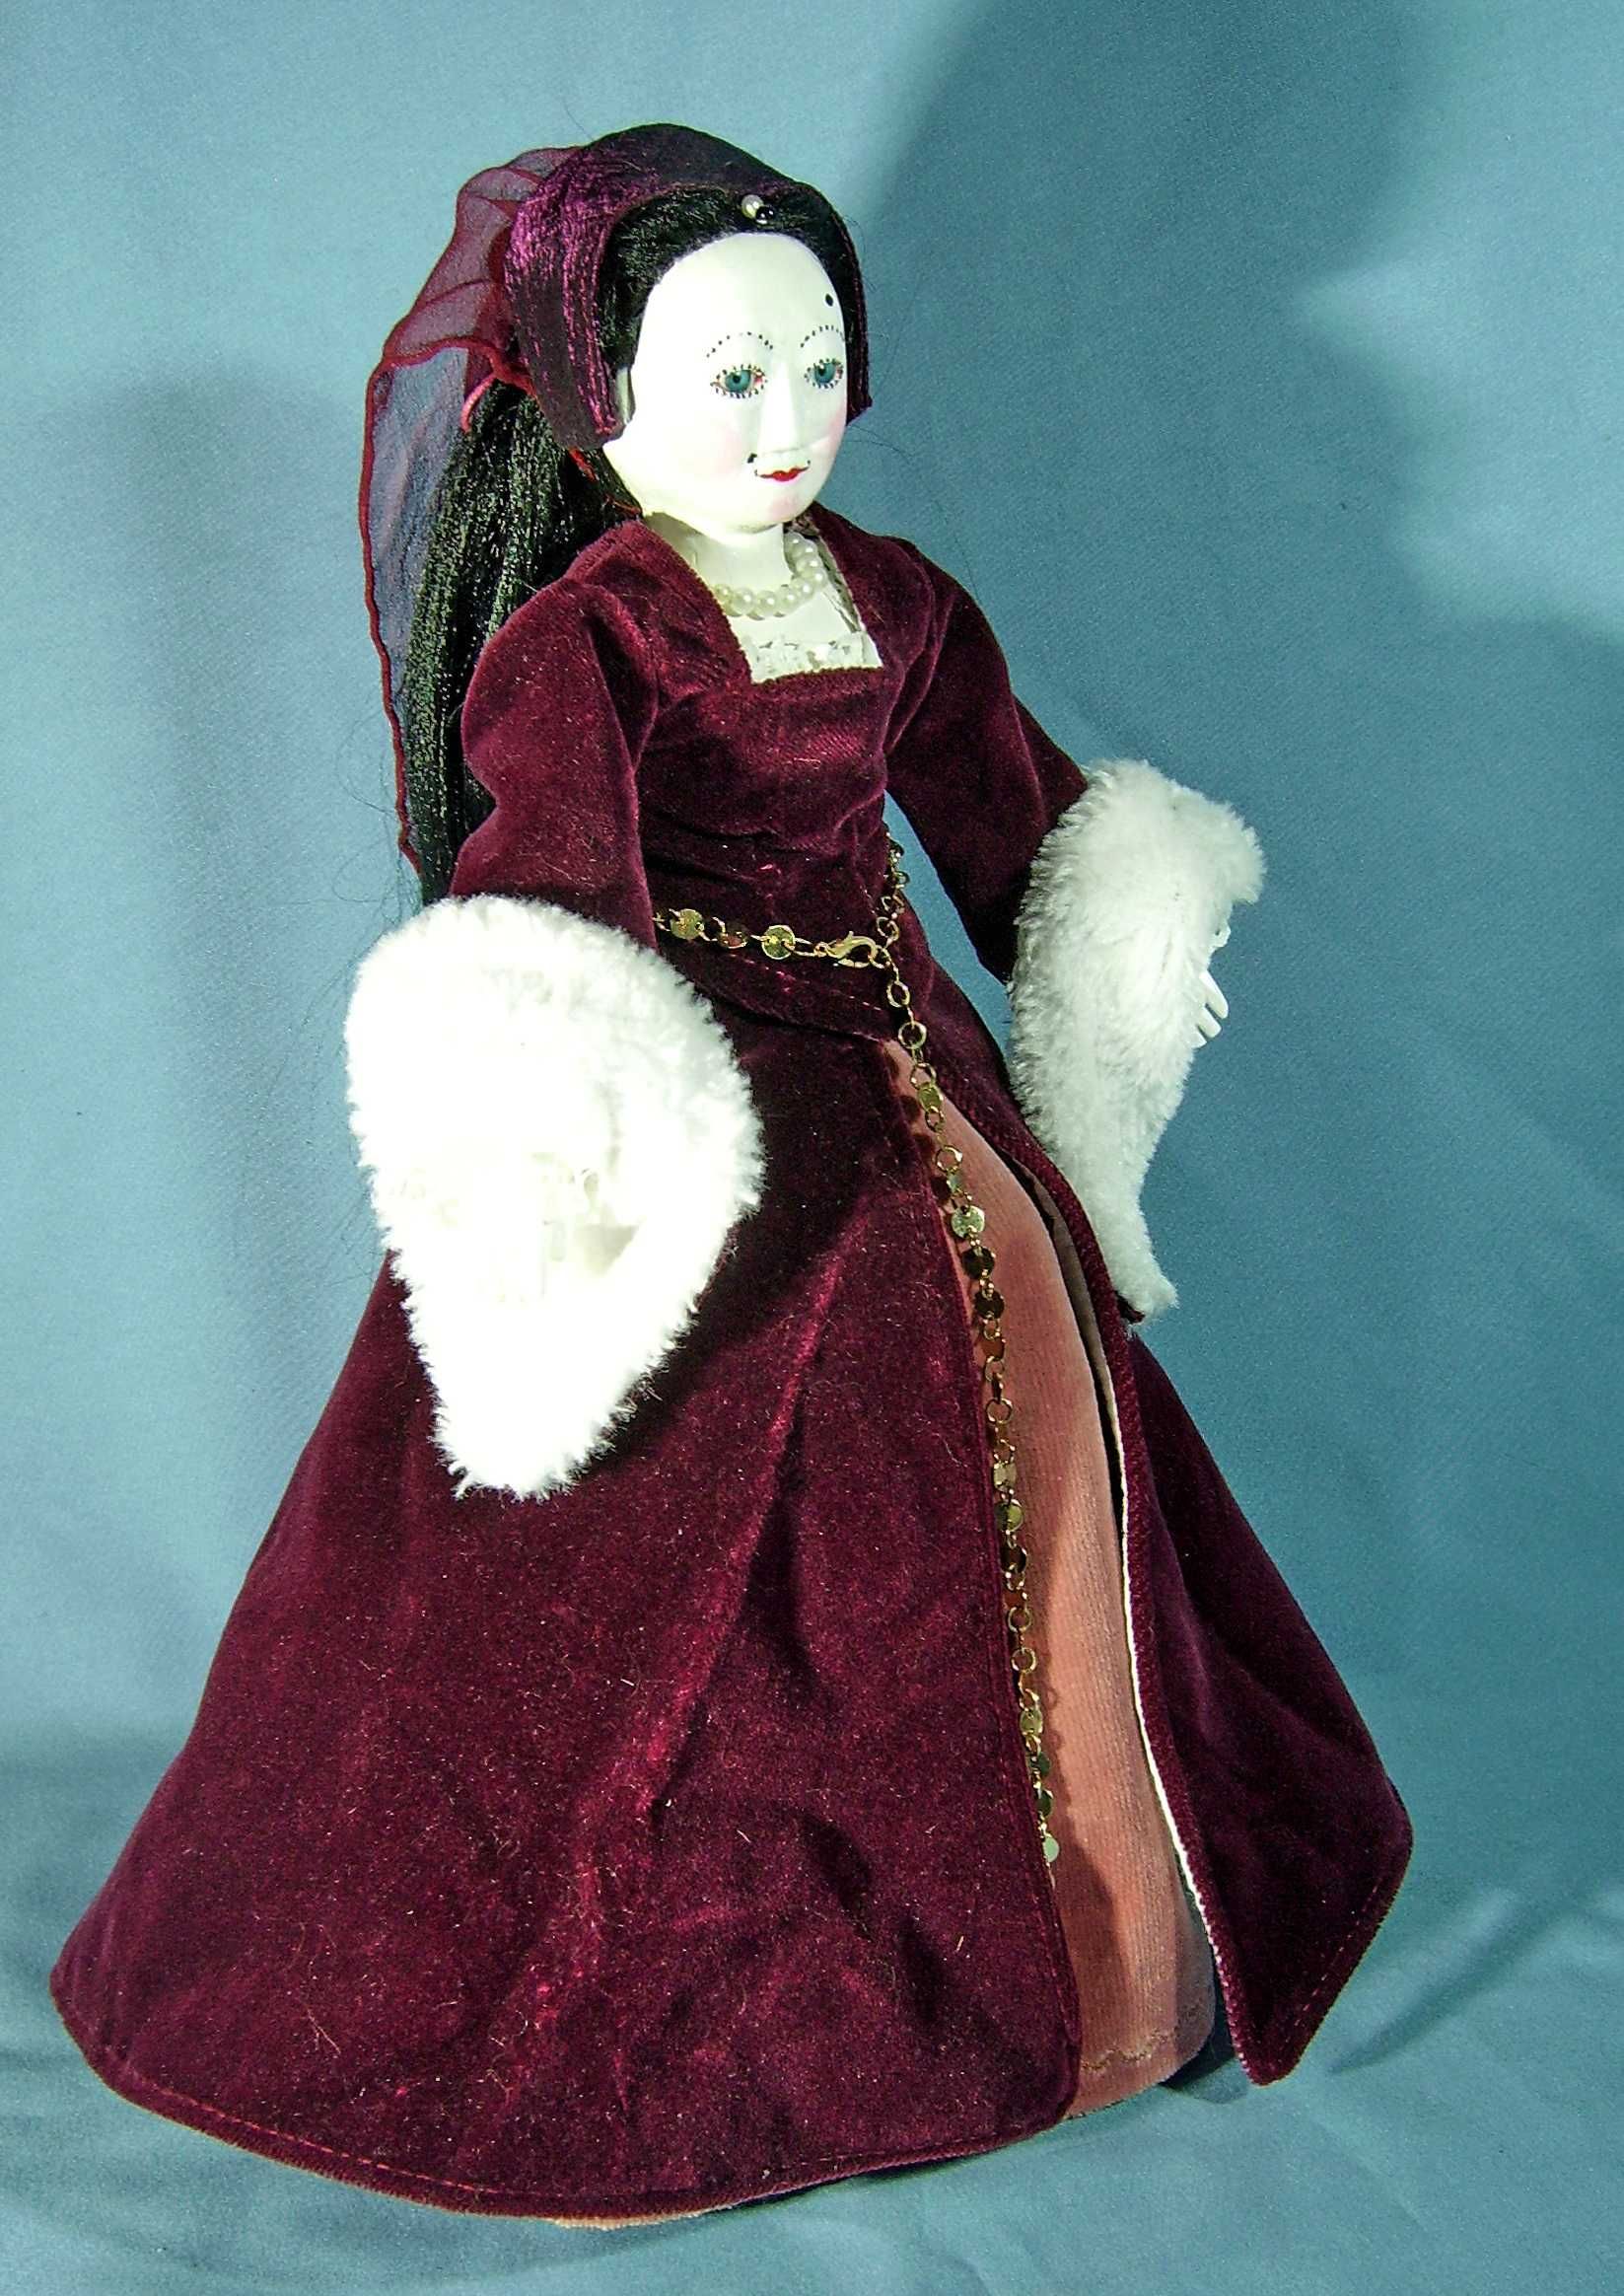 Кукла лялька шарнирная дерево в стиле Pandora / Queen Annа на підставц